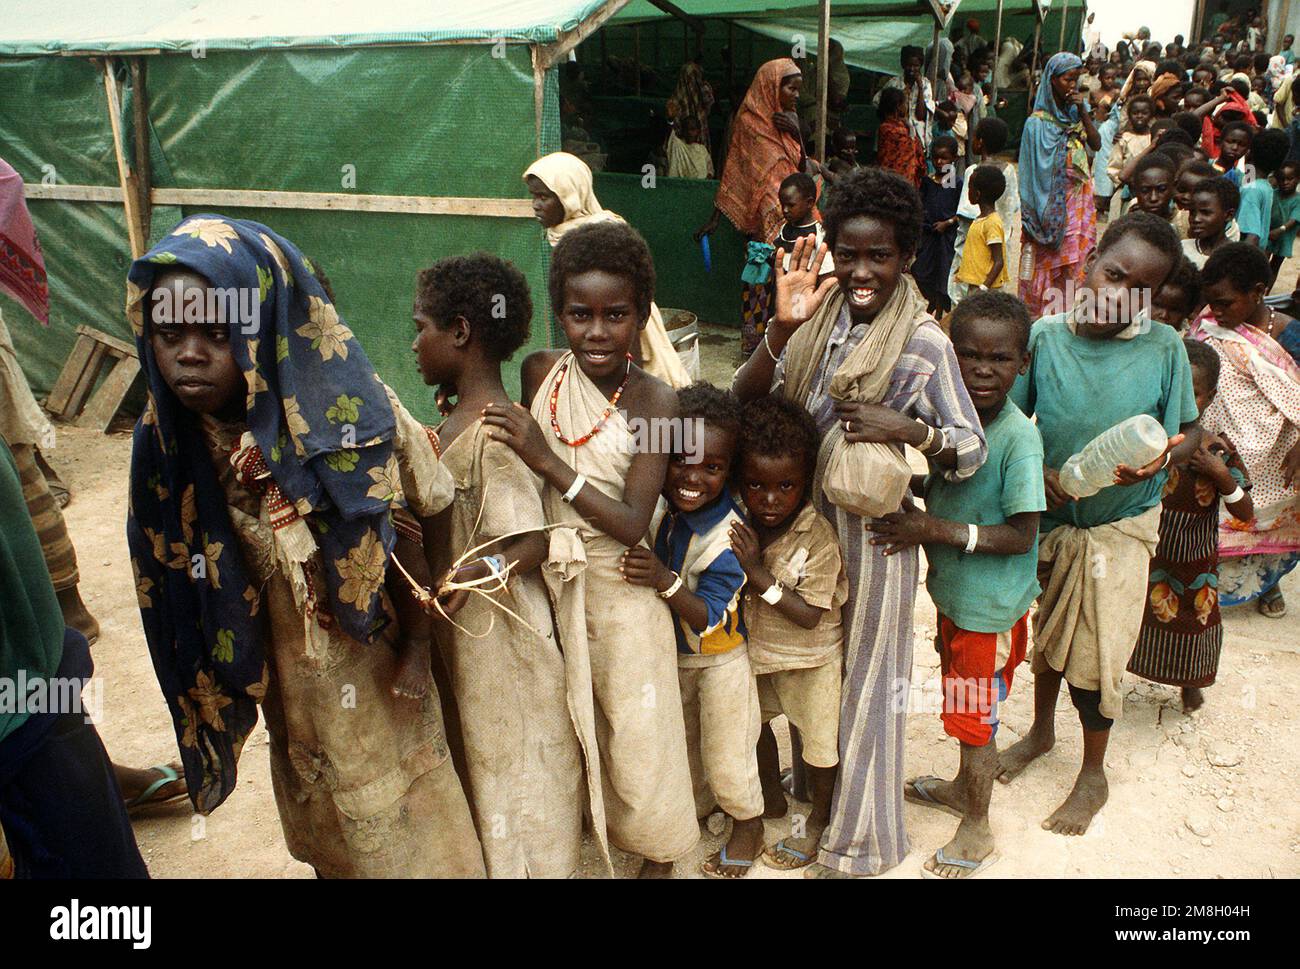 Les enfants sont en ligne à une station d'aide pendant l'opération multinationale de secours Restore Hope. Objet opération/série: RÉTABLIR L'ESPOIR pays: Somalie (SOM) Banque D'Images